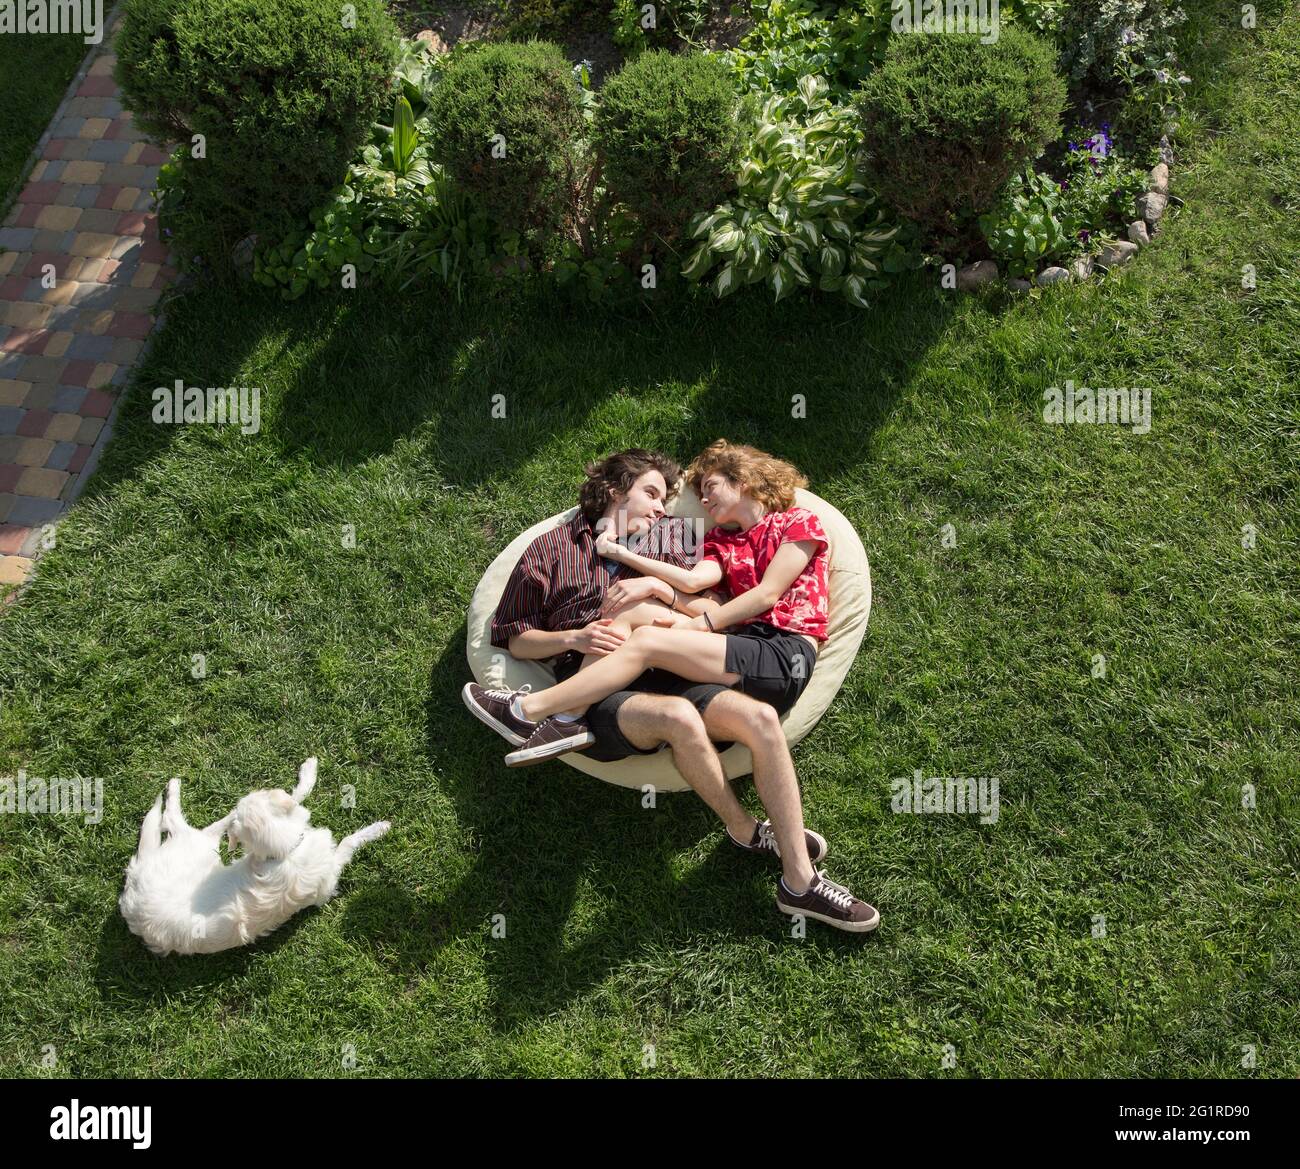 Jugendliche im Alter von 16-17 Jahren, ein Mann und ein Mädchen, liegen umarmt in einem großen weichen Beutel auf dem grünen Gras. Verliebte junge Menschen. Romantische Beziehung. Entspannen, Stockfoto